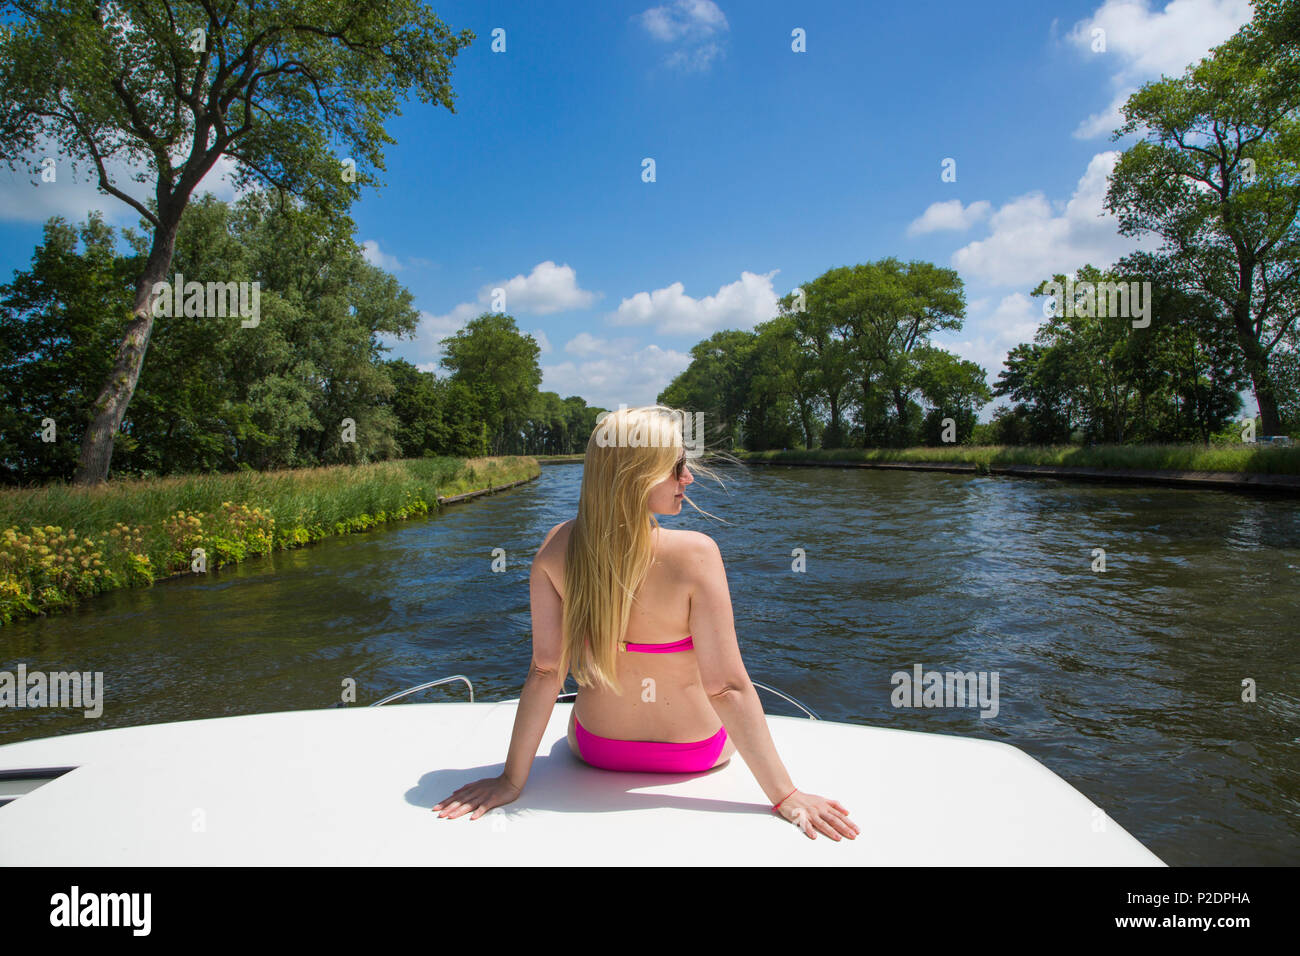 Jeune femme blonde portant un bikini se détend sur le pont d'un bateau péniche Le Royal mystique sur le canal de Plassendale - Niuewpoort, Banque D'Images